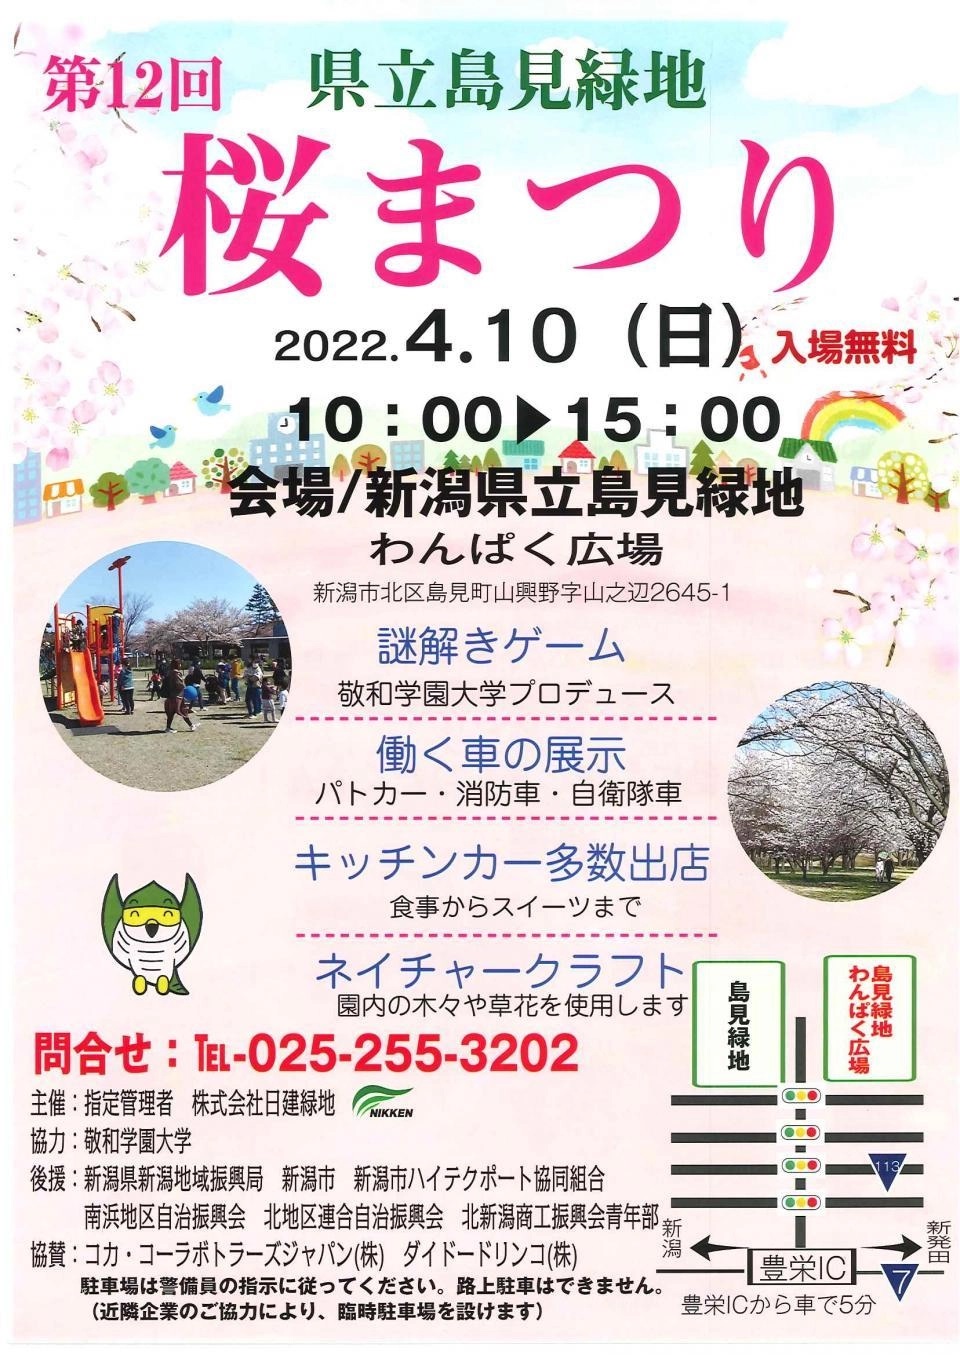 第12回 新潟県立島見緑地 桜まつりポスター